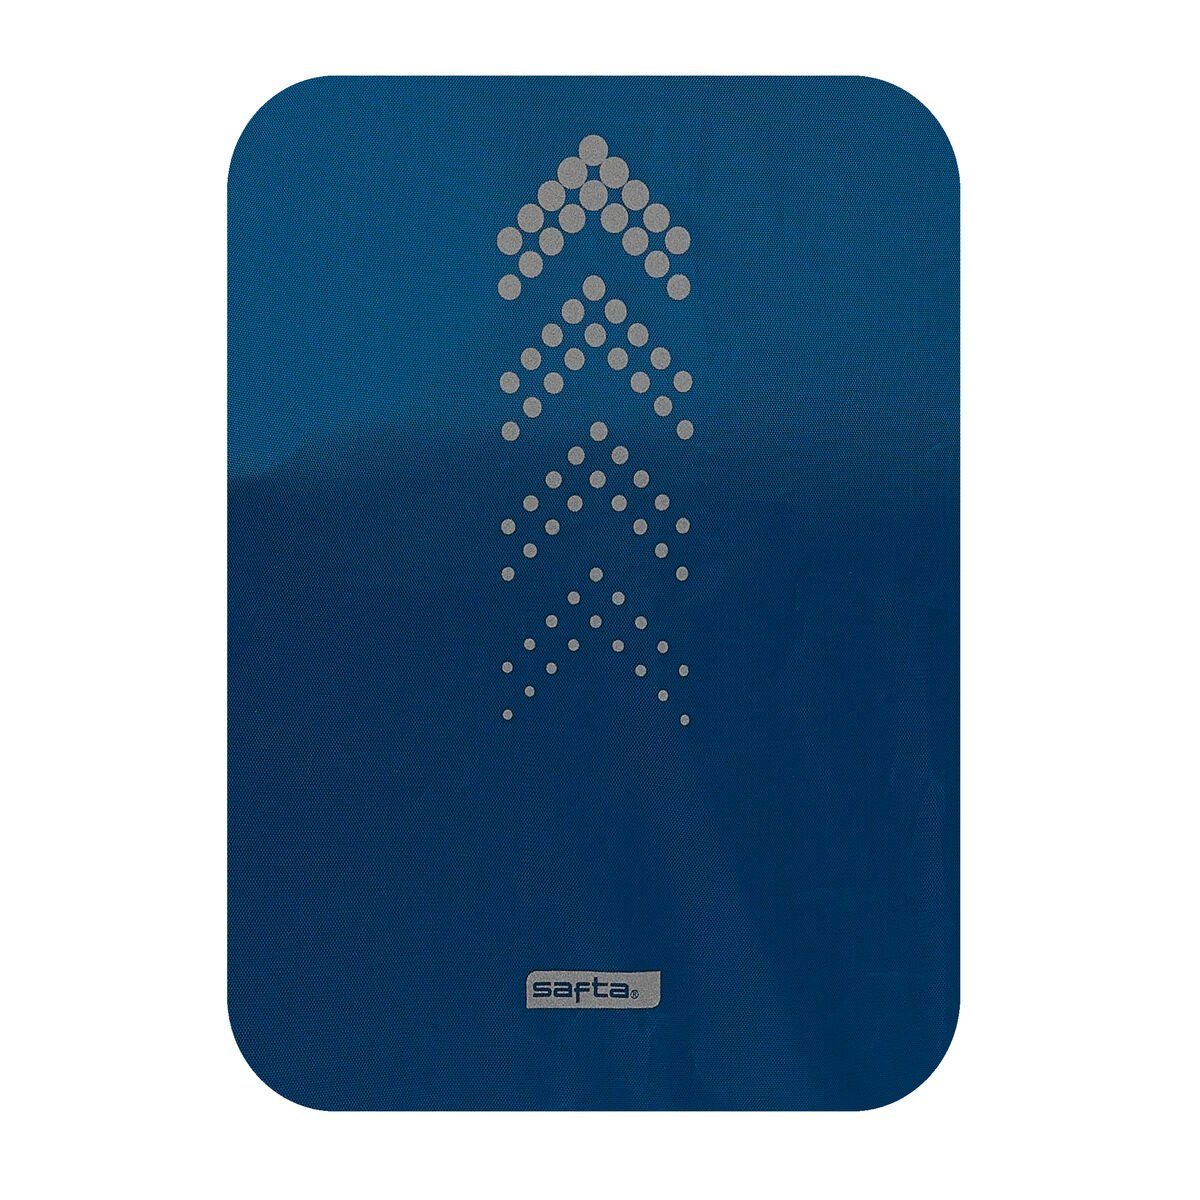 Marineblau Rucksack-Abdeckung safta 36 x 27 50 cm Klein Wasserfest Rucksack x Safta